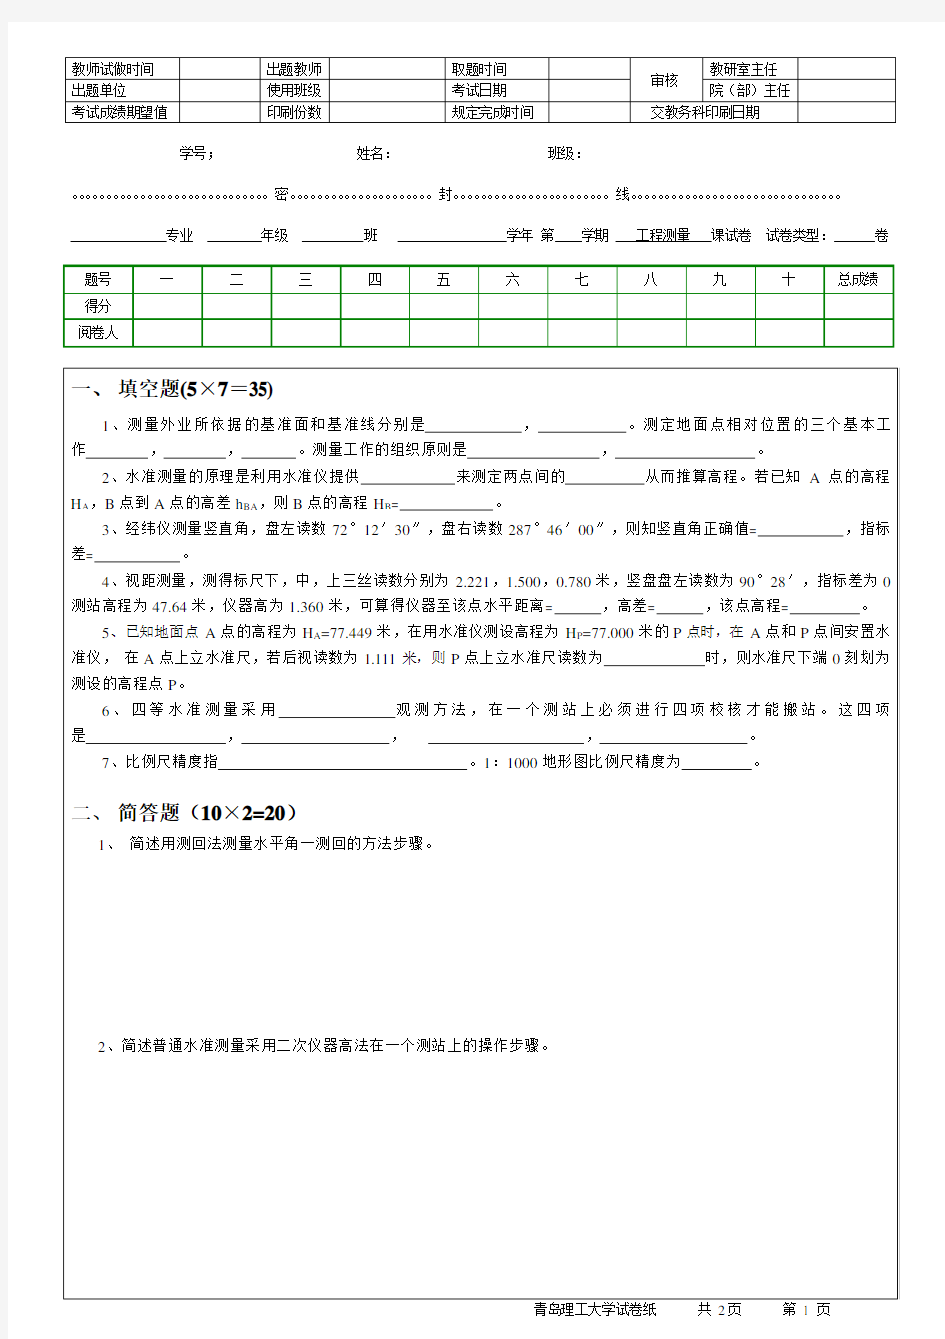 【青岛理工大学】工程测量期末考试模拟试卷(附带答案)